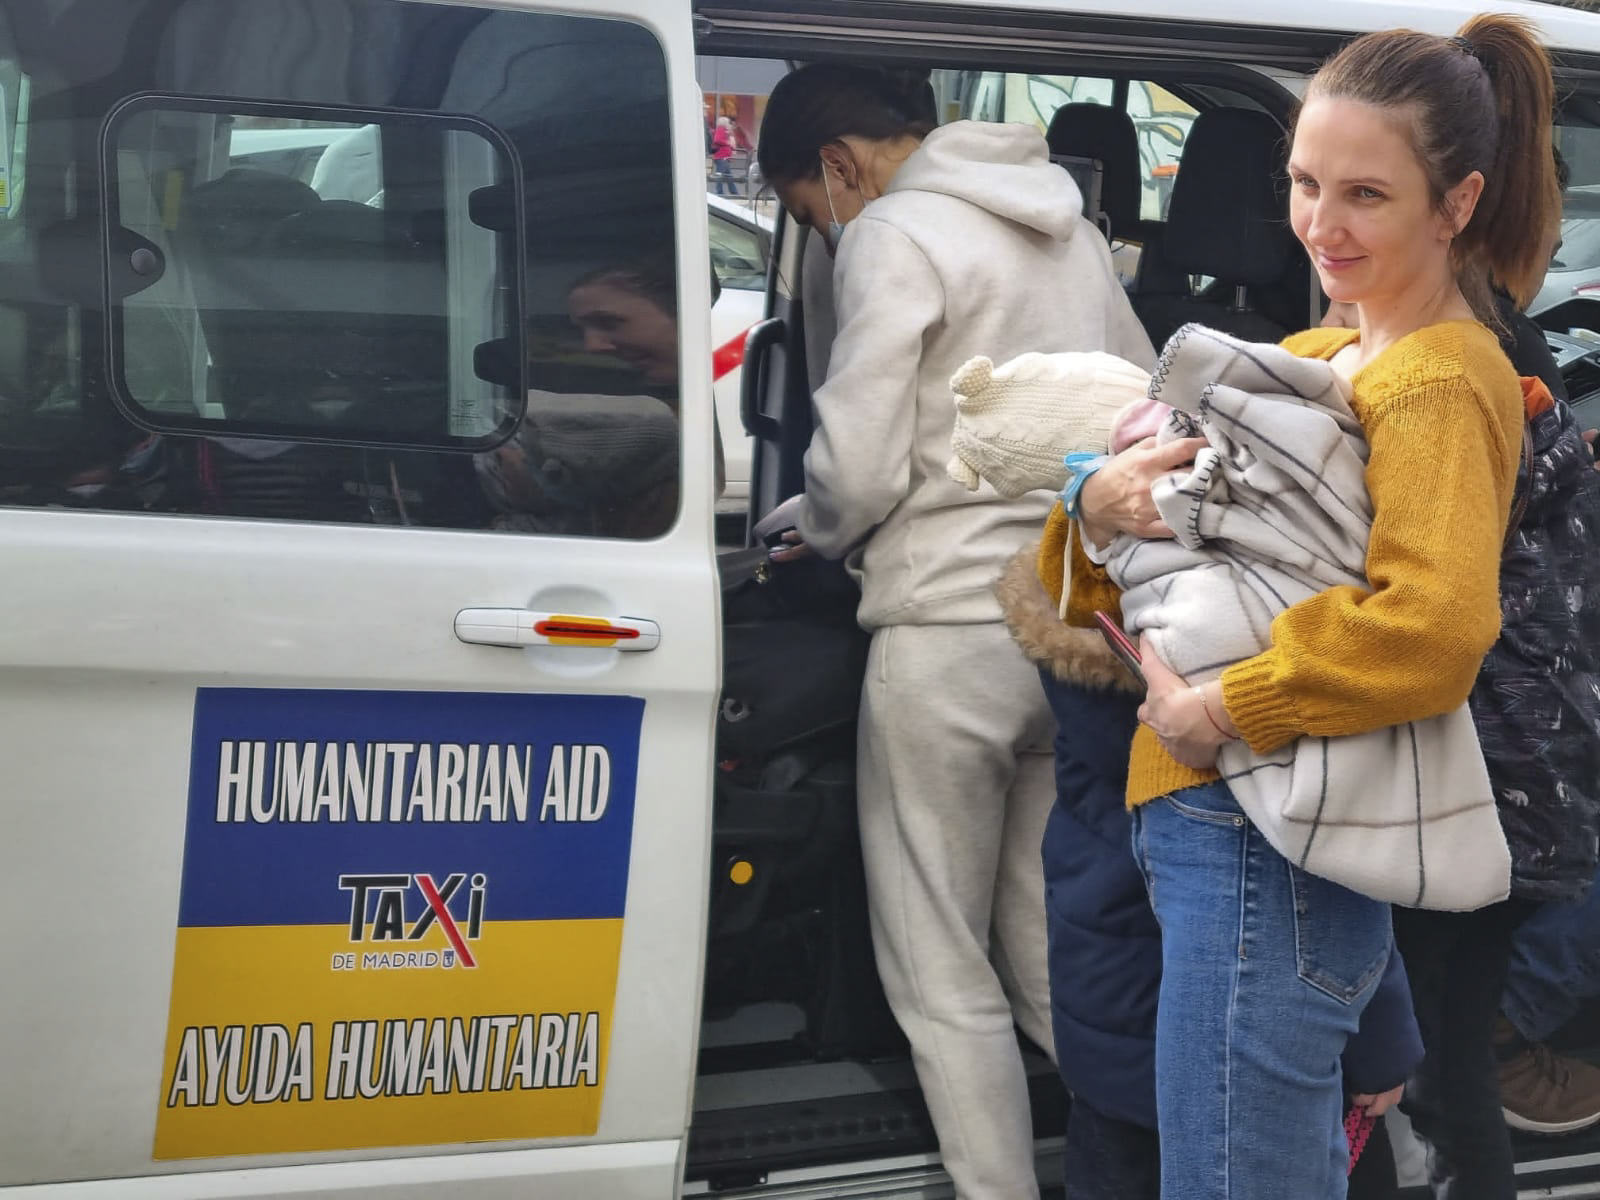 Olha Zelinska, de 39 años, originaria de Kiev, con su hija de nueve meses en brazos. Es una de las madres que forman parte de la caravana solidaria.